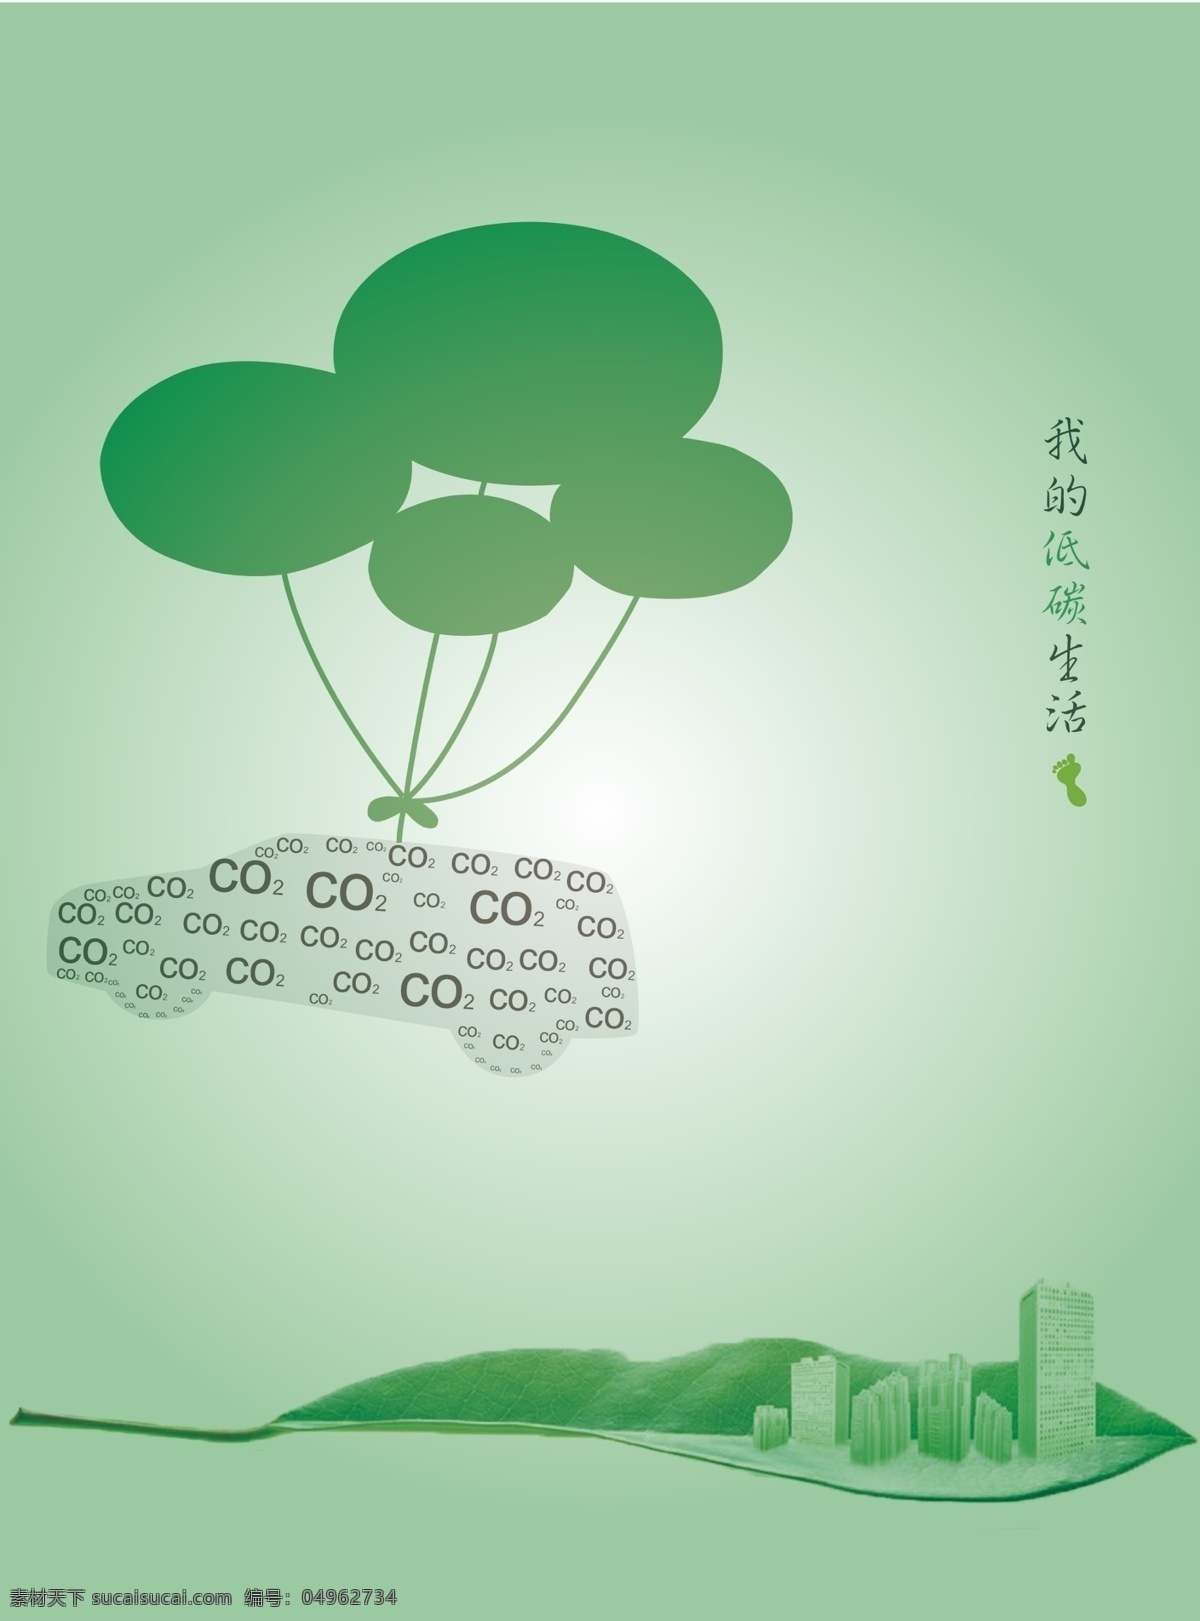 低碳环保 环保主题 低碳 我的低碳生活 绿色